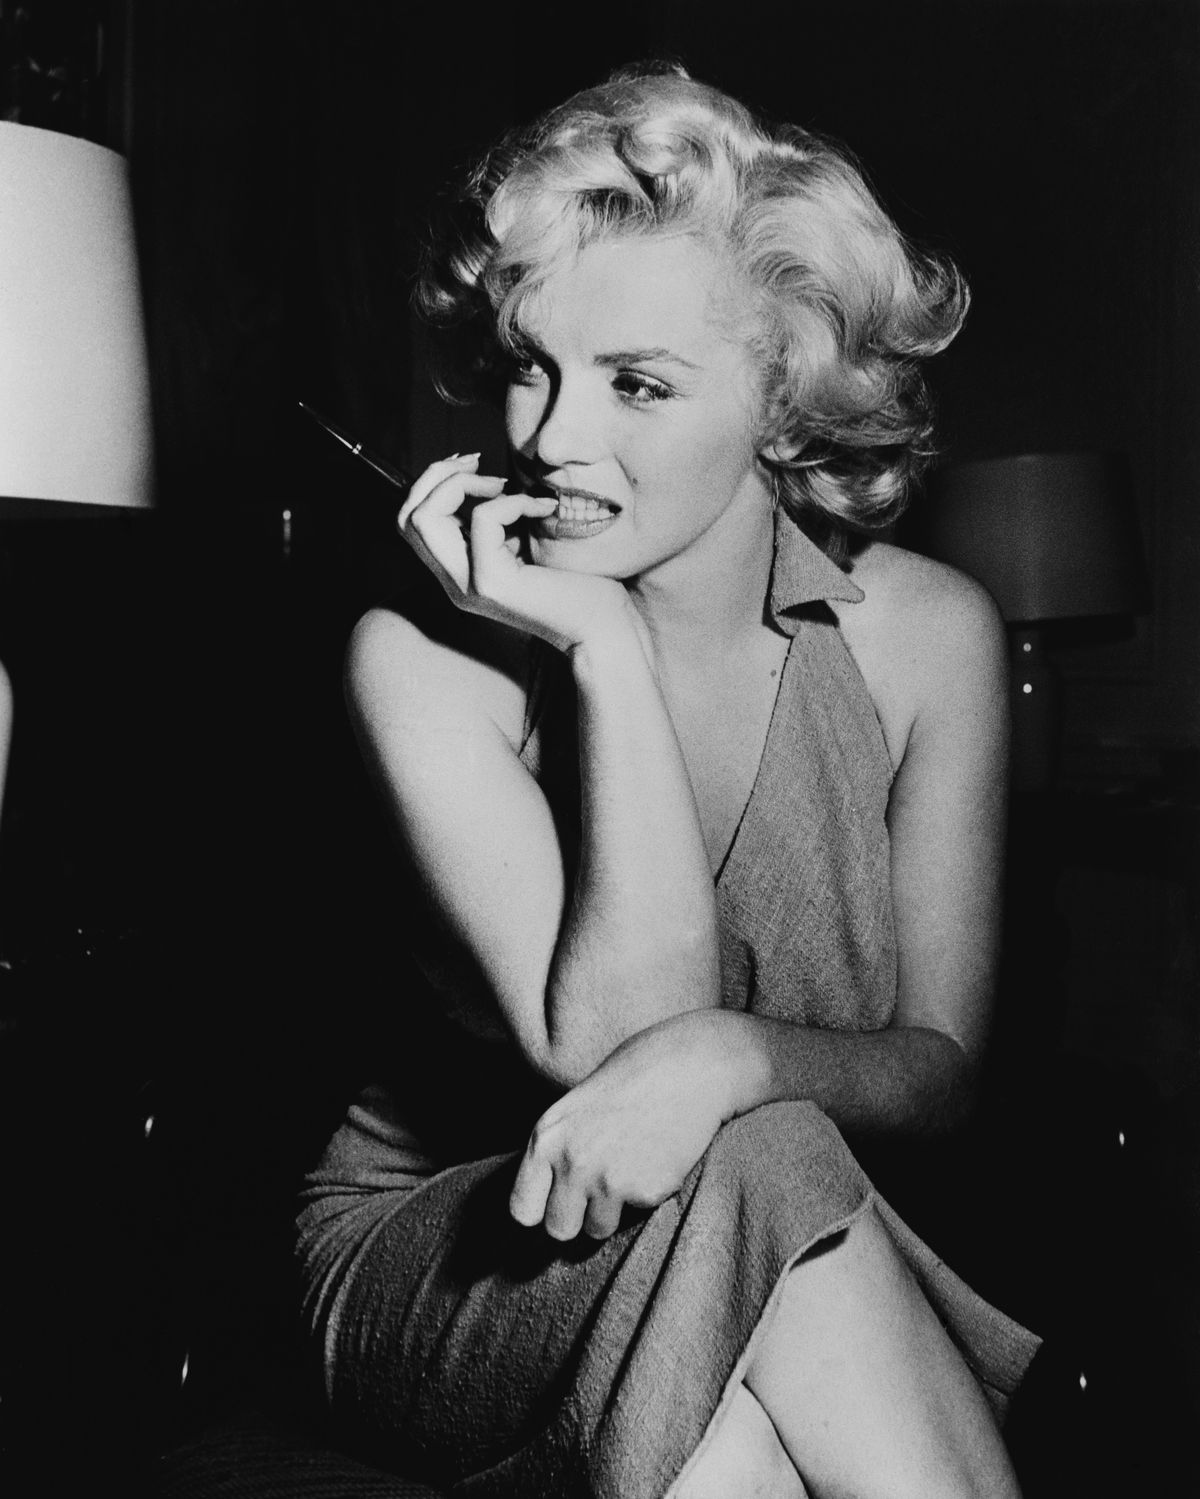 Resoneer vriendelijke groet vrijgesteld The explosive real story behind Marilyn Monroe film Blonde